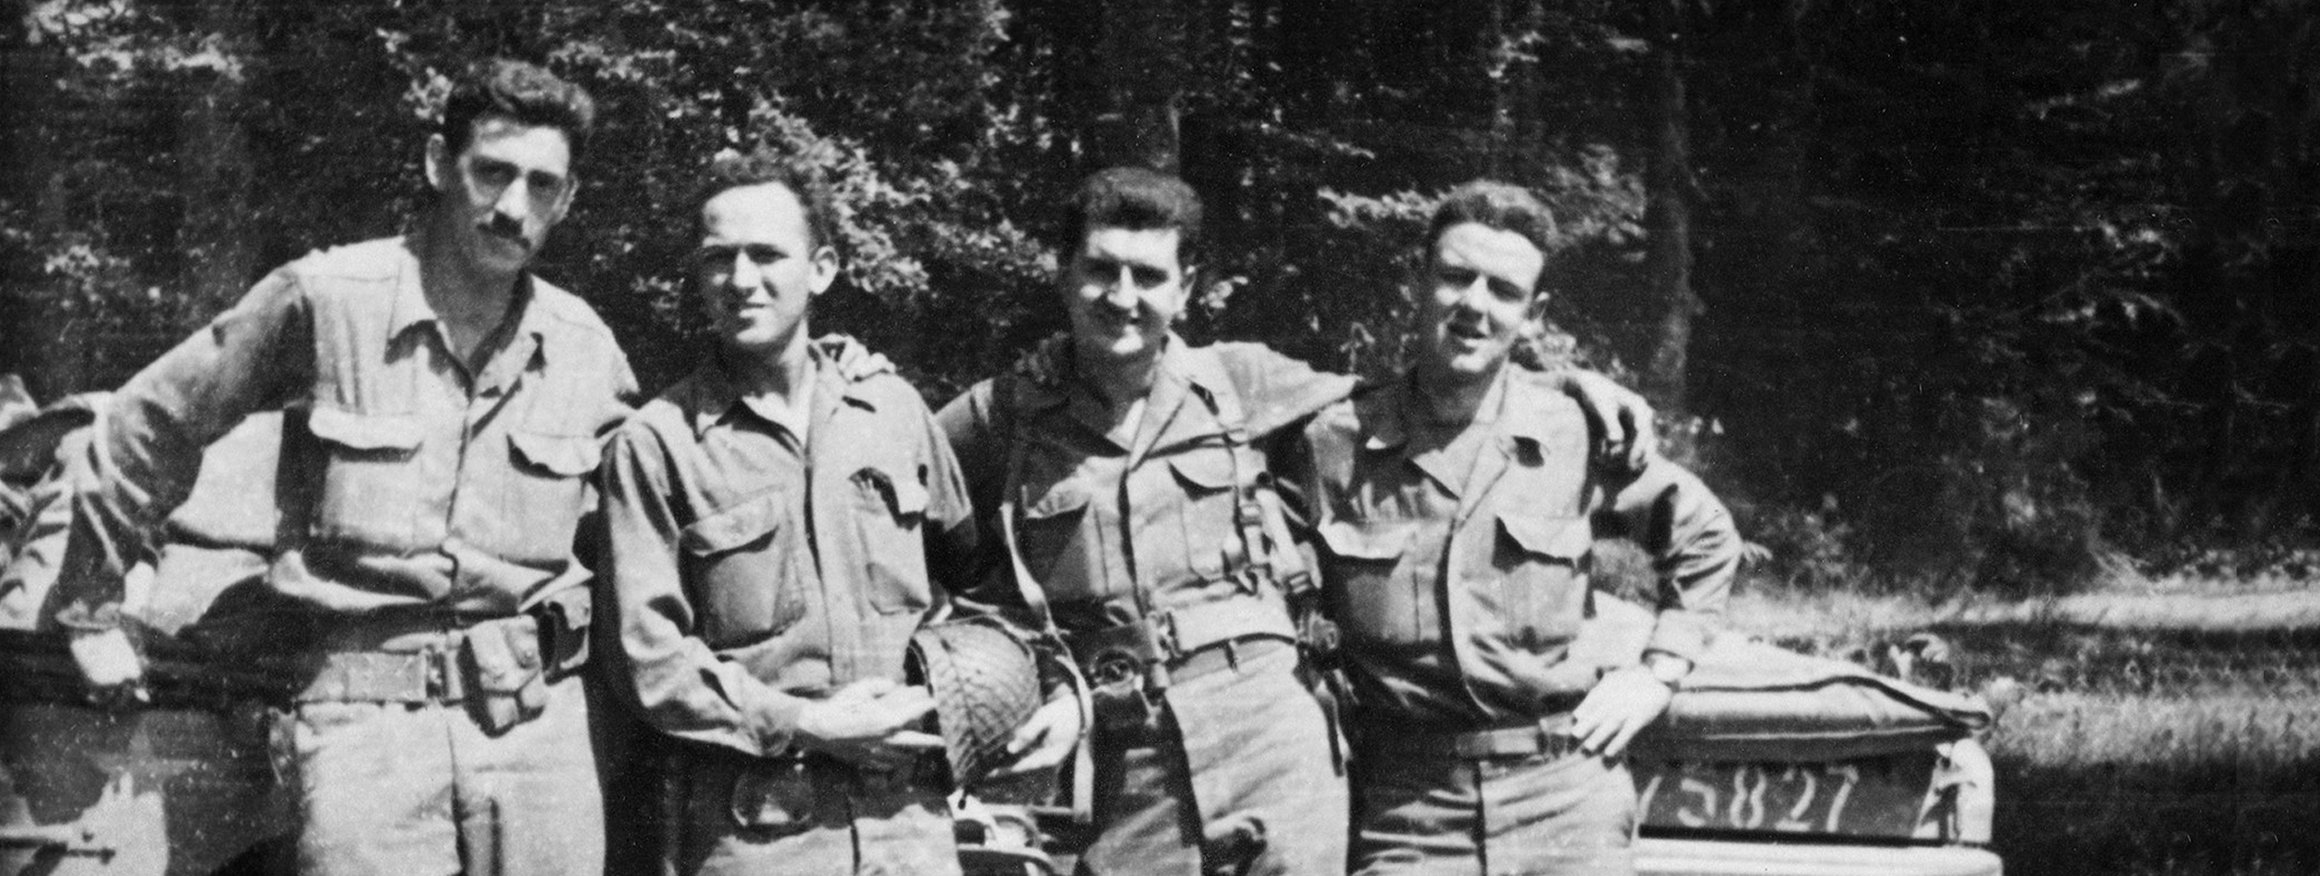 Der Schriftsteller J.D. Salinger steht während des 2. Weltkrieges gemeinsam mit seinen Kameraden vor einem Militärfahrzeug